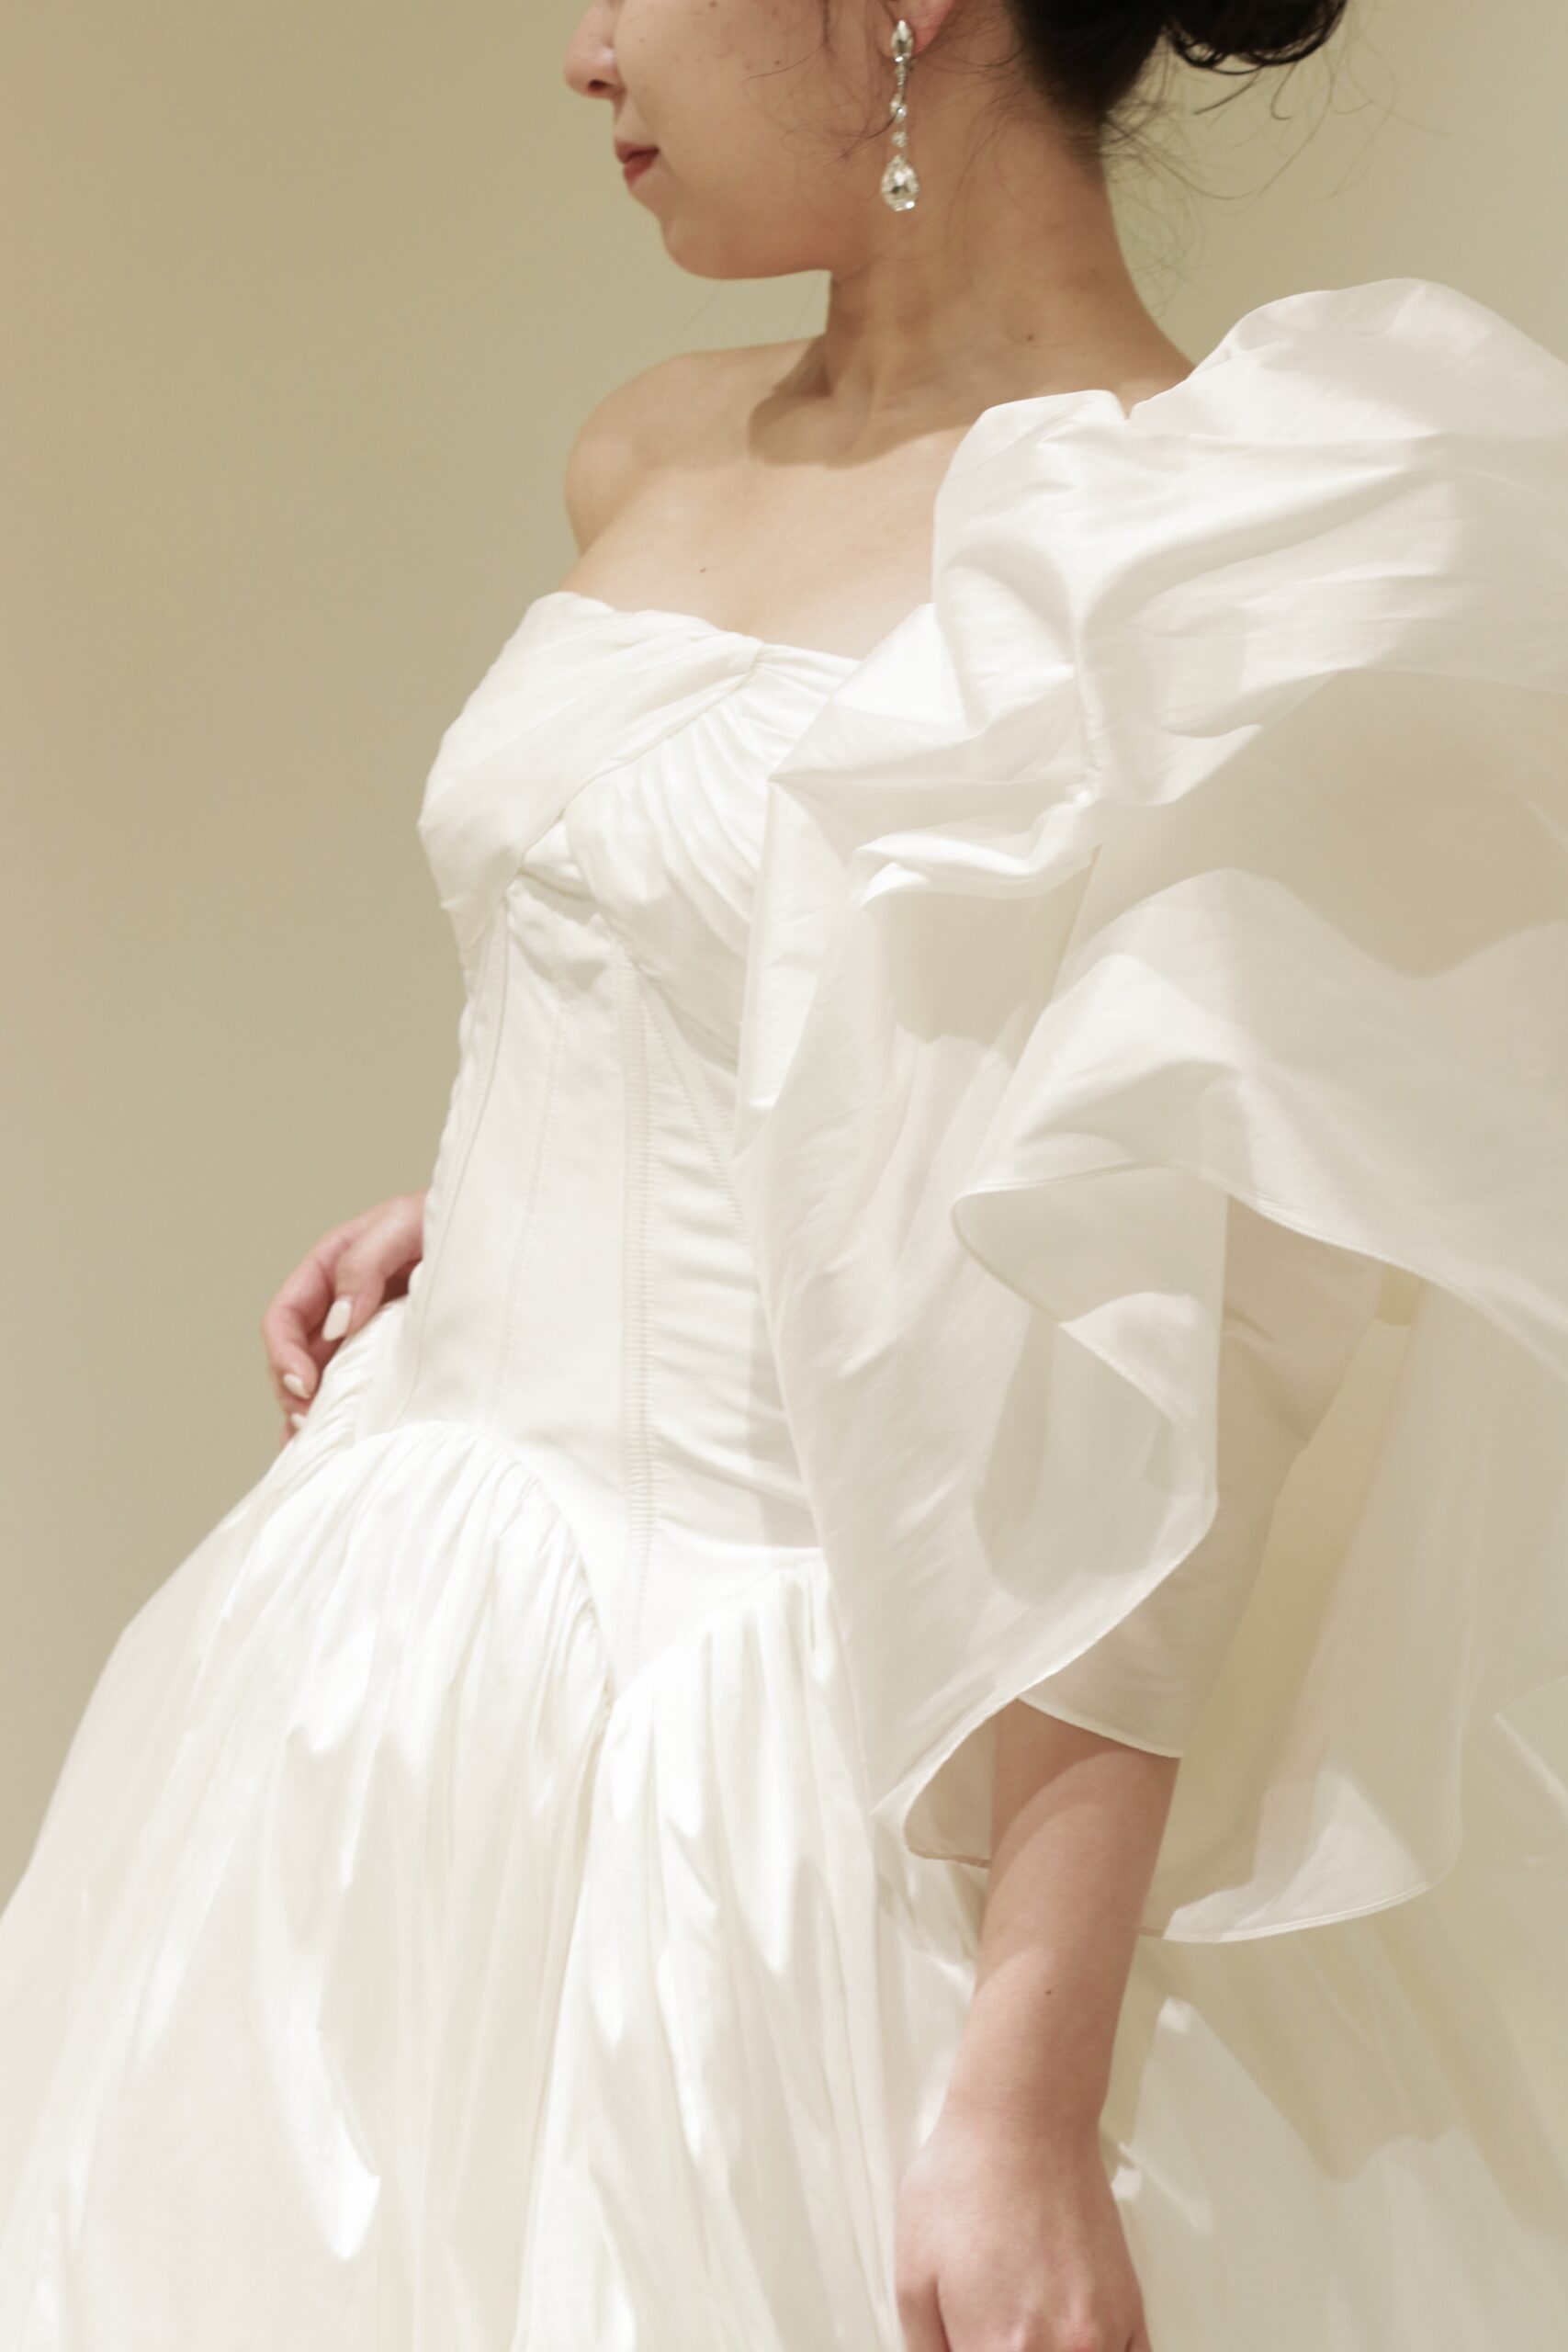 ザトリートドレッシングアディション店に新作で入荷した東京エリアの花嫁におすすめのアムサーラのウェディングドレス